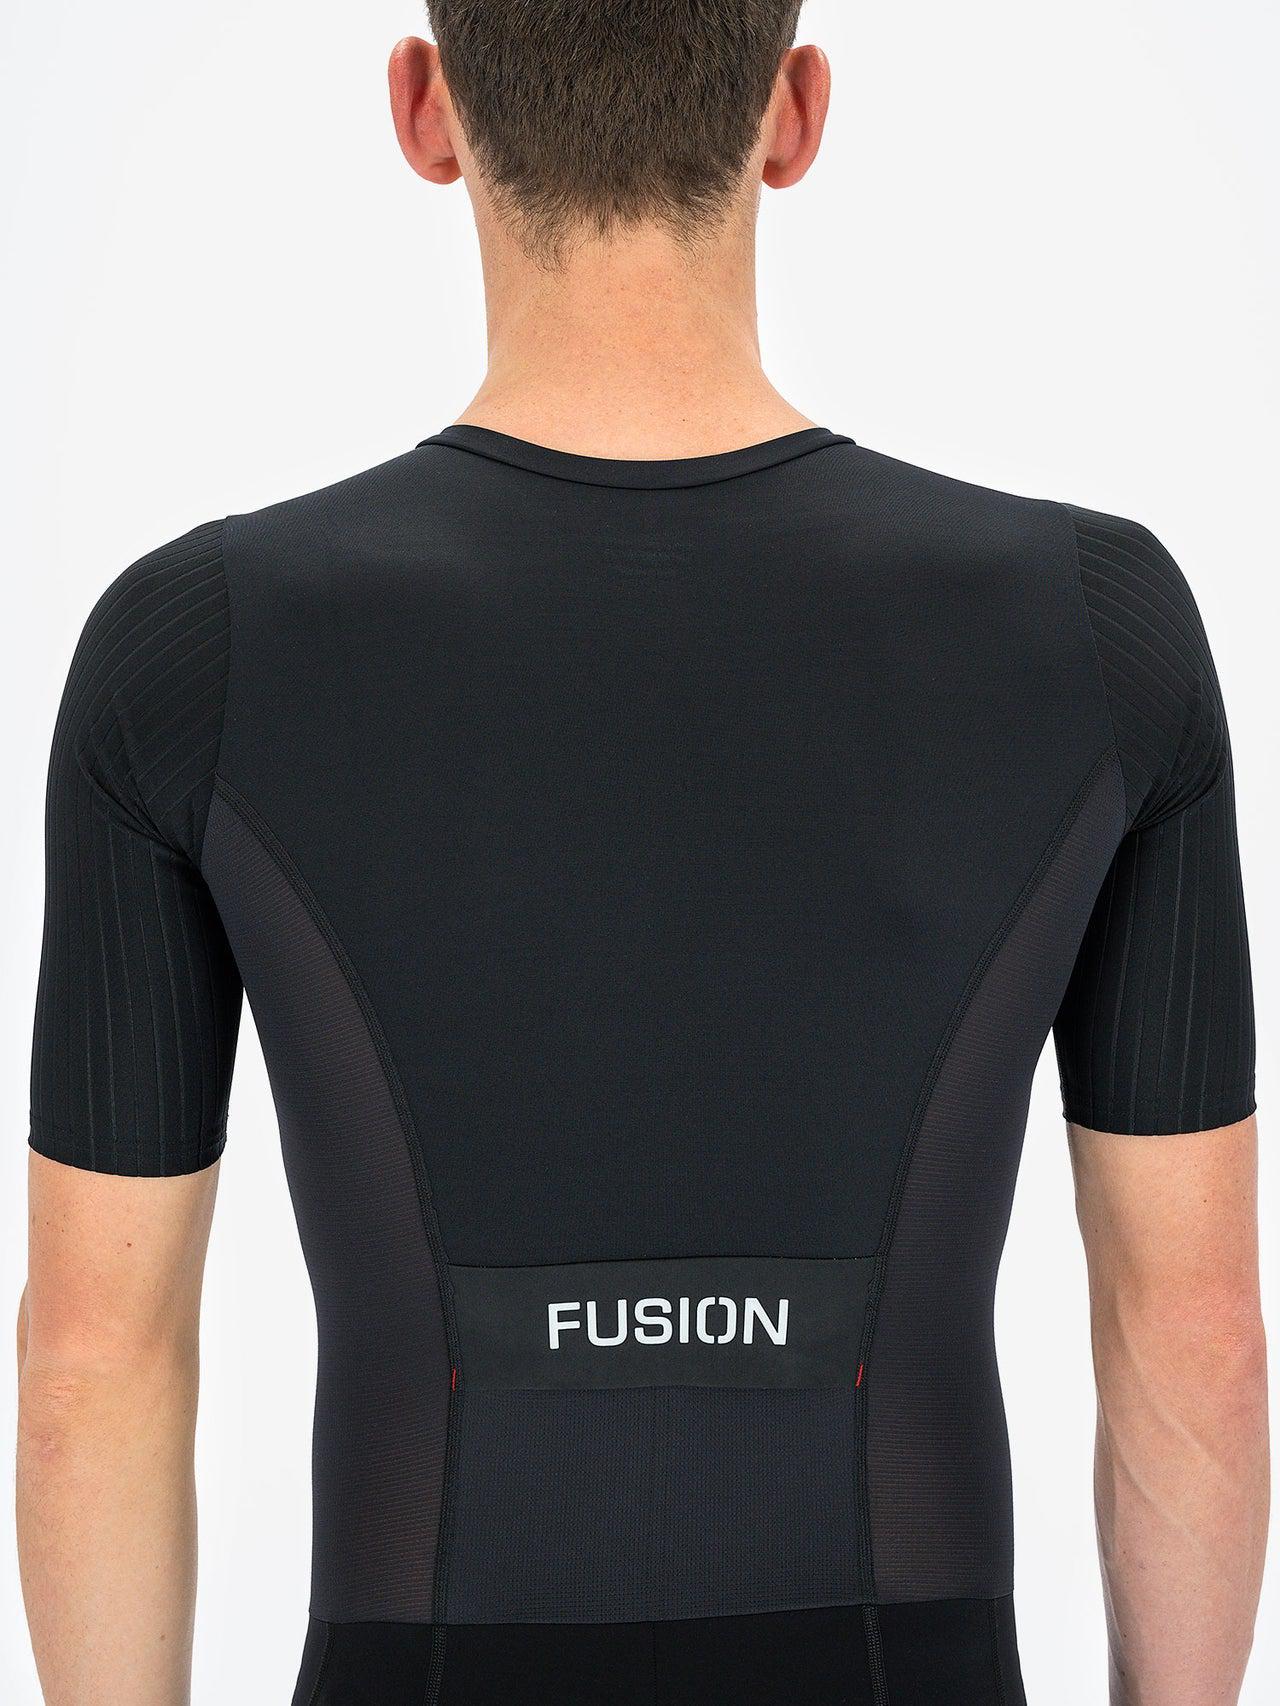 Fusion SLi Speed Suit Trisuit Unisex